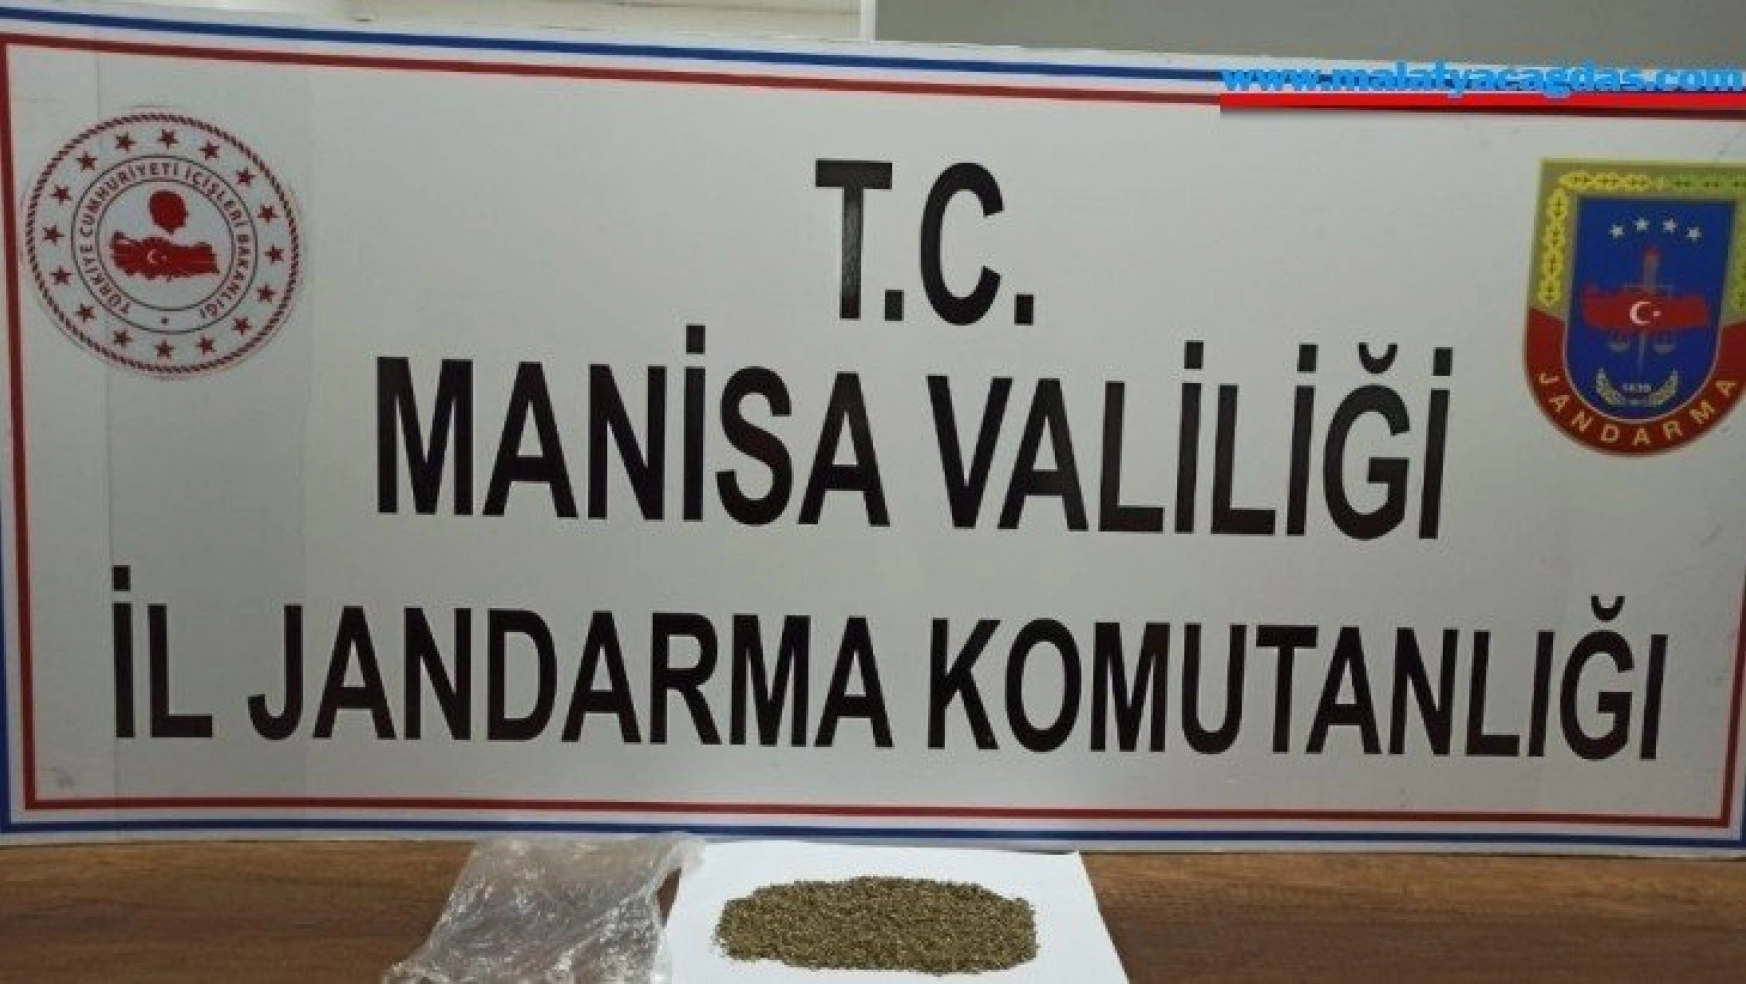 Manisa'da jandarmadan uyuşturucu operasyonu